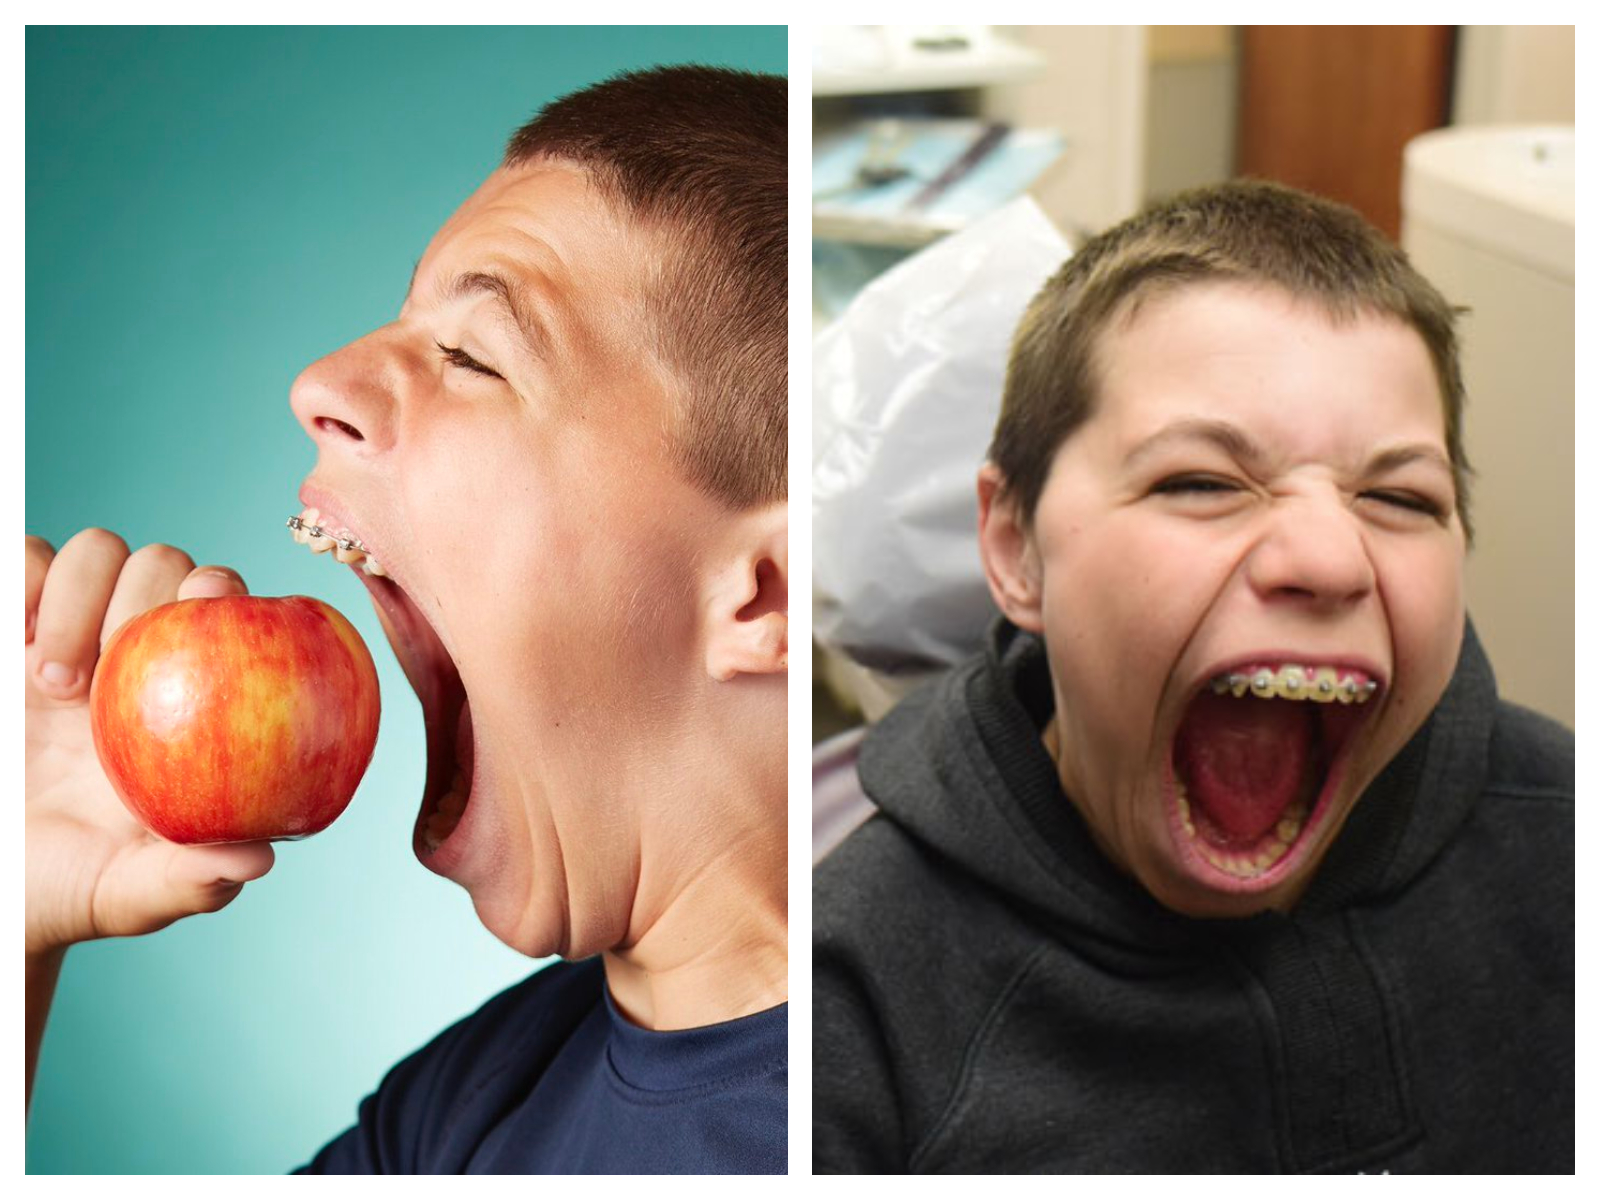 Ce jeune garçon de 14 ans possède... la plus grande bouche au monde !